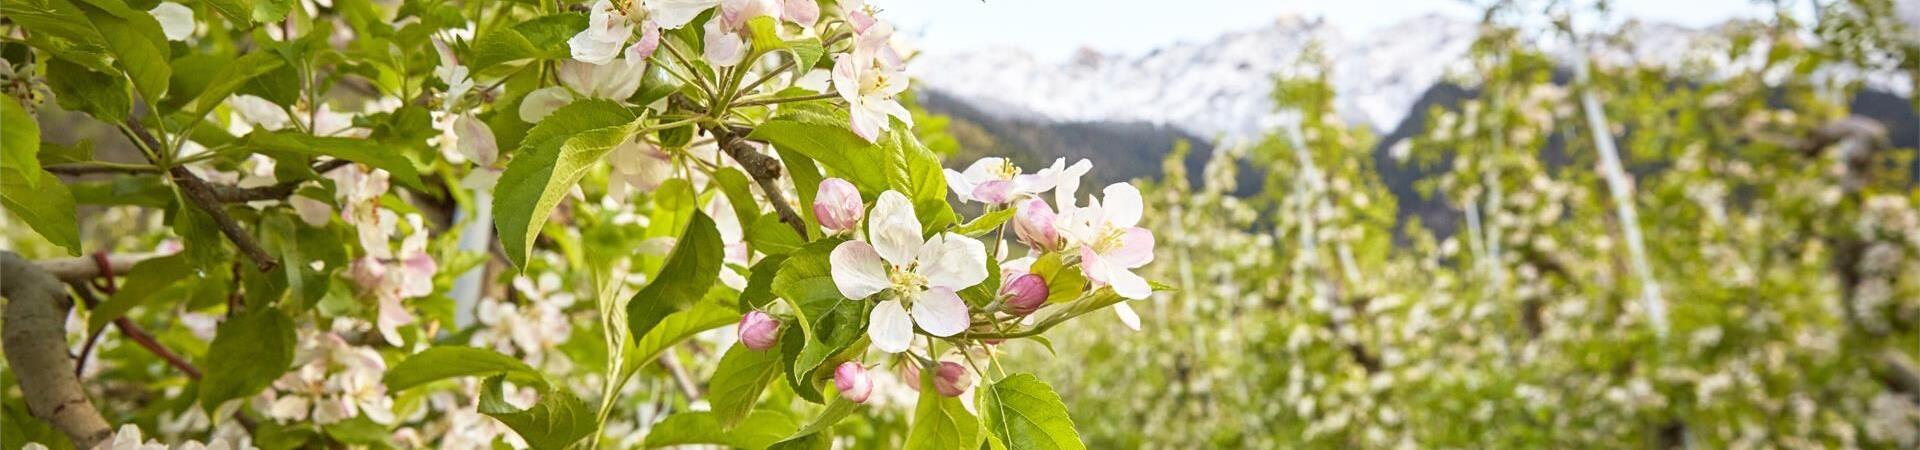 Apfelwiesen in der Blüte